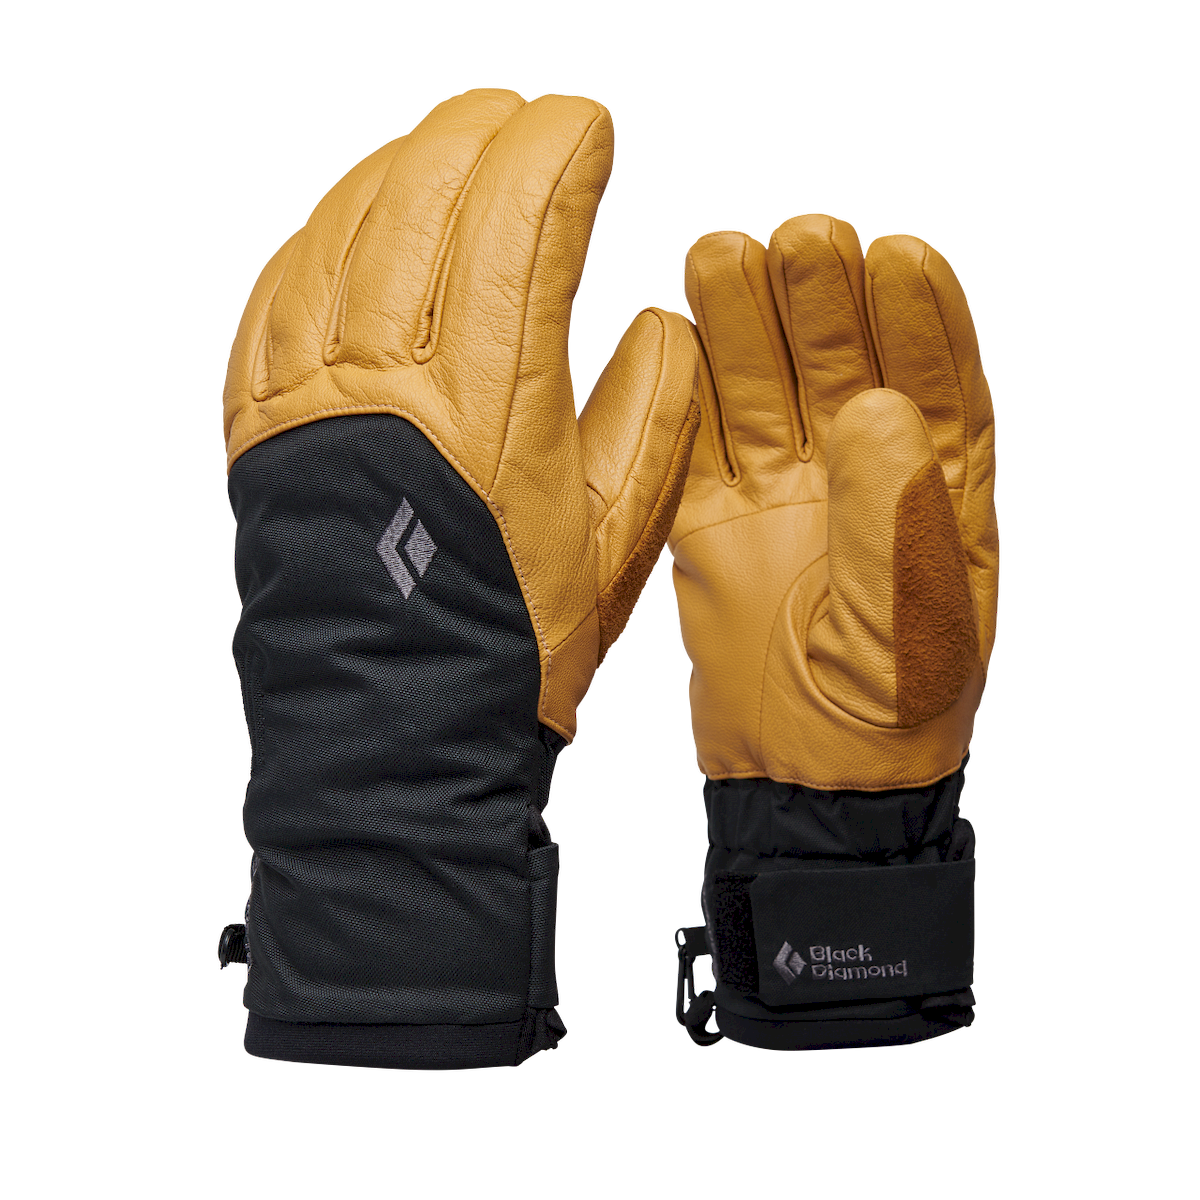 Black Diamond Legend Gloves - Ski gloves - Men's